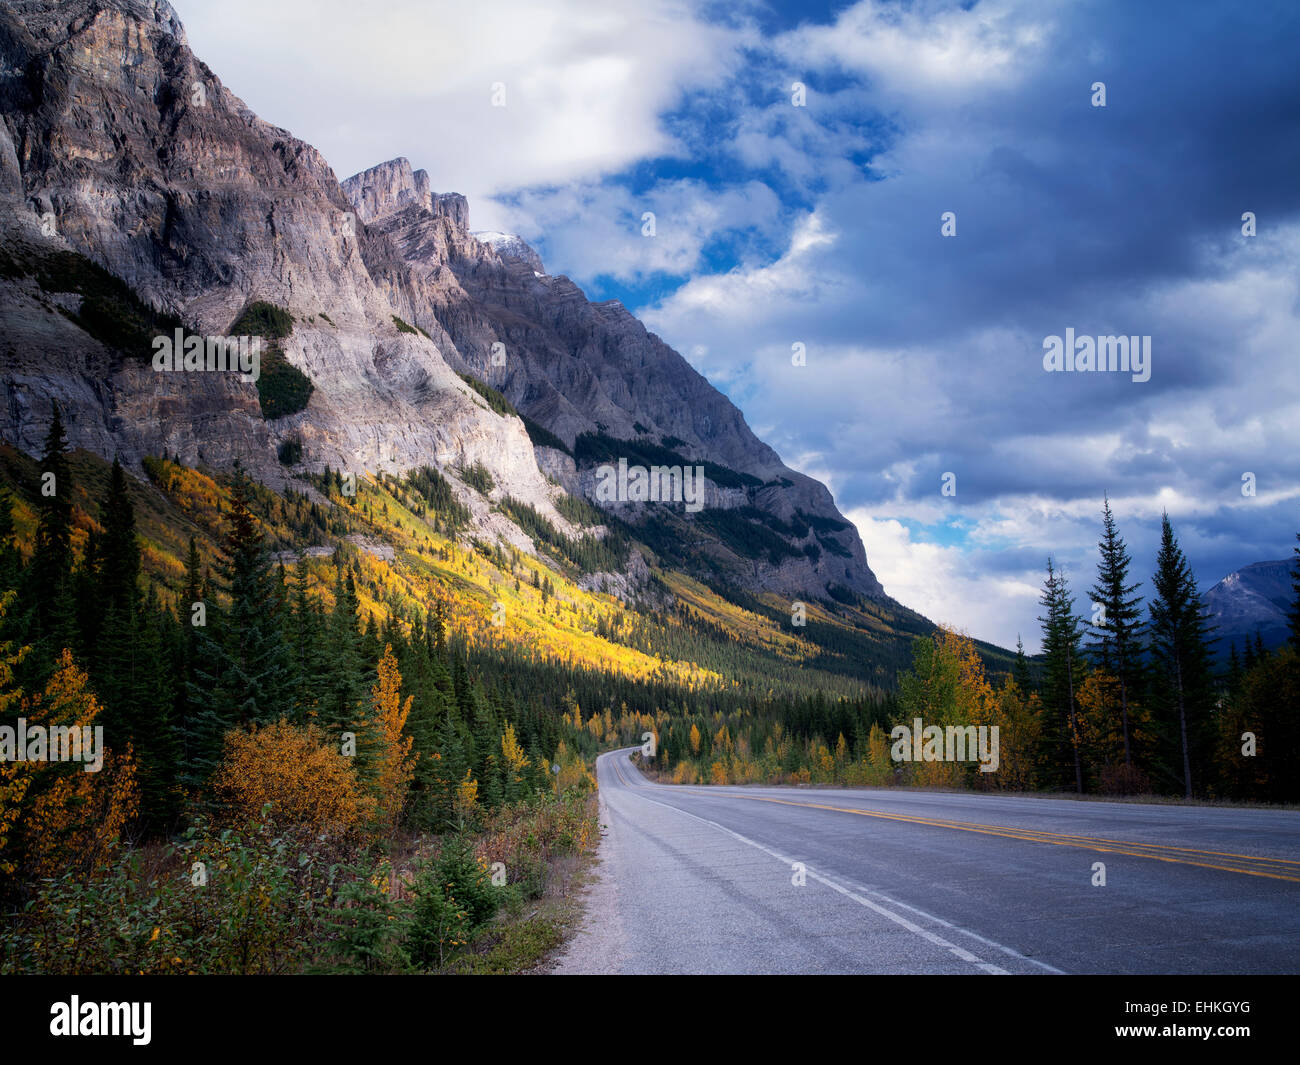 Le Mountainside avec couleur d'automne et de peupliers de la route. Le parc national Banff, Alberta, Canada Banque D'Images